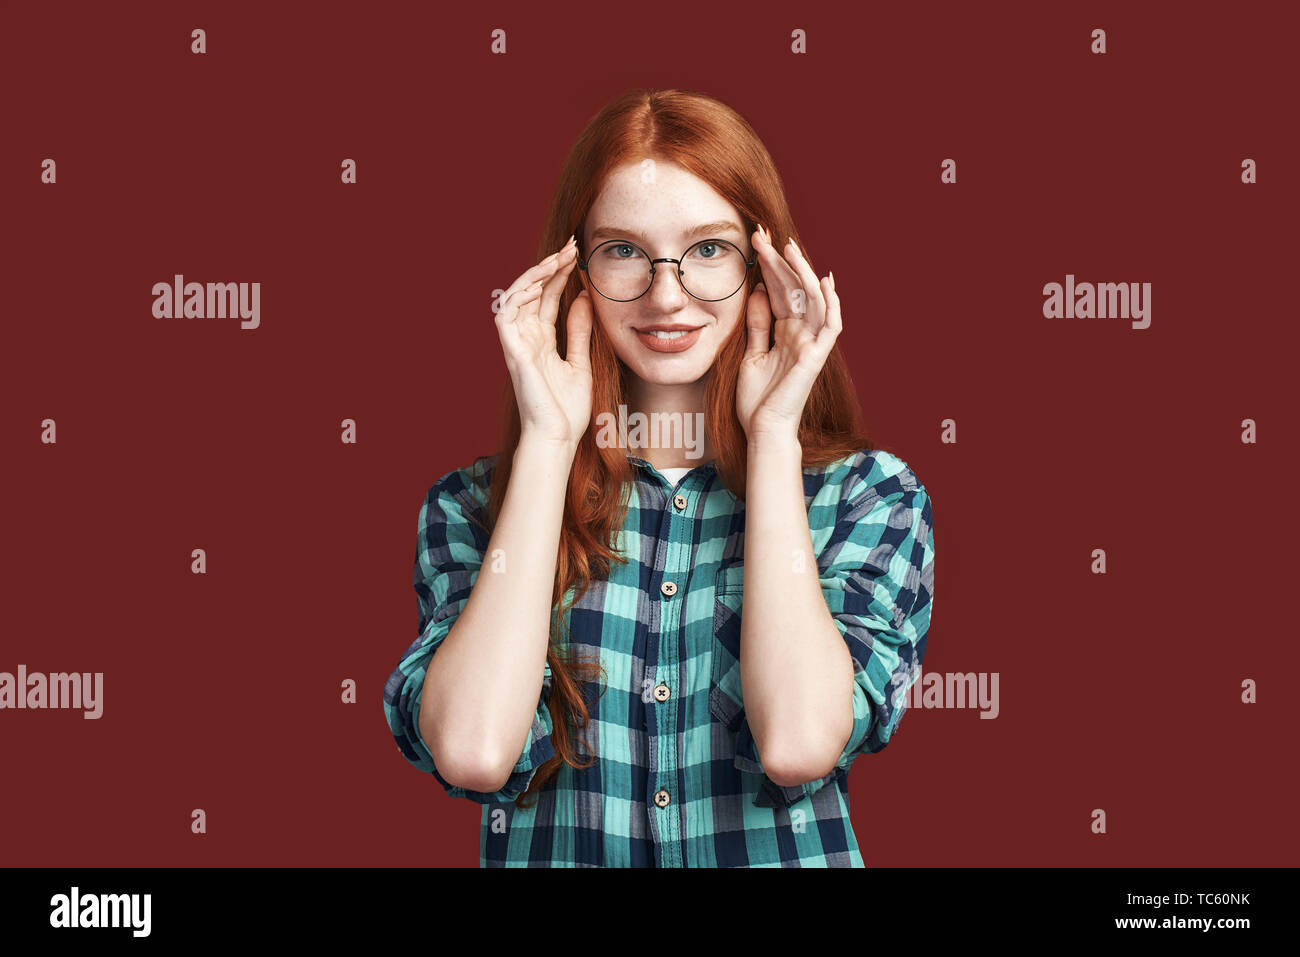 Close up della cute redhead ragazza con i capelli lunghi toccando specs e guardando la telecamera indossando camicia a scacchi isolate su sfondo rosso. Inquadratura orizzontale Foto Stock